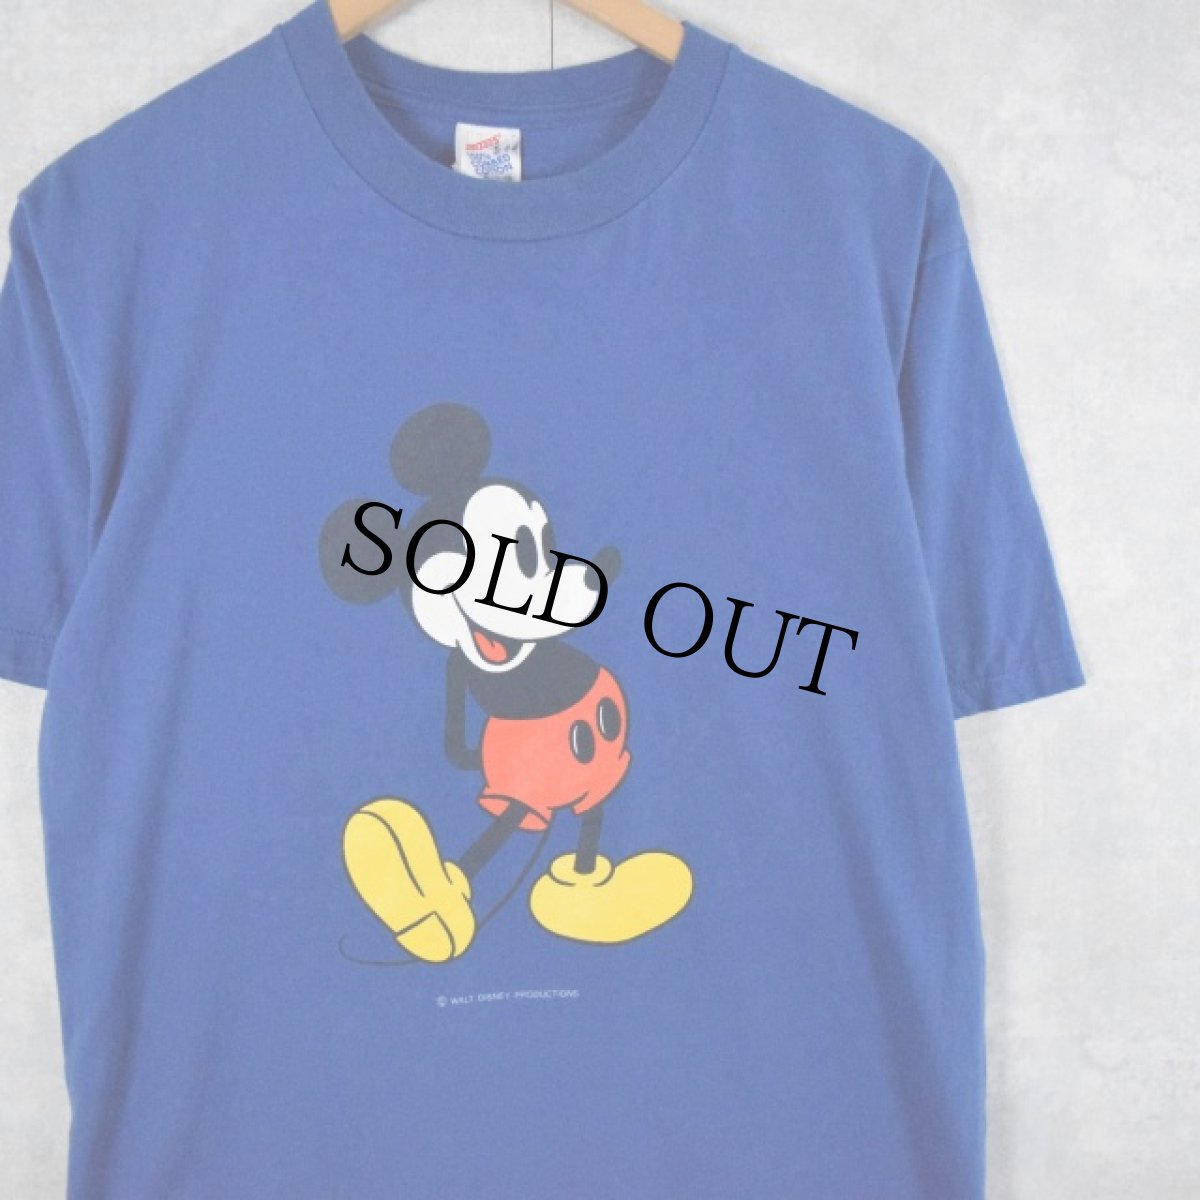 画像1: 90's Disney MINNIE MOUSE USA製 キャラクタープリントTシャツ L (1)